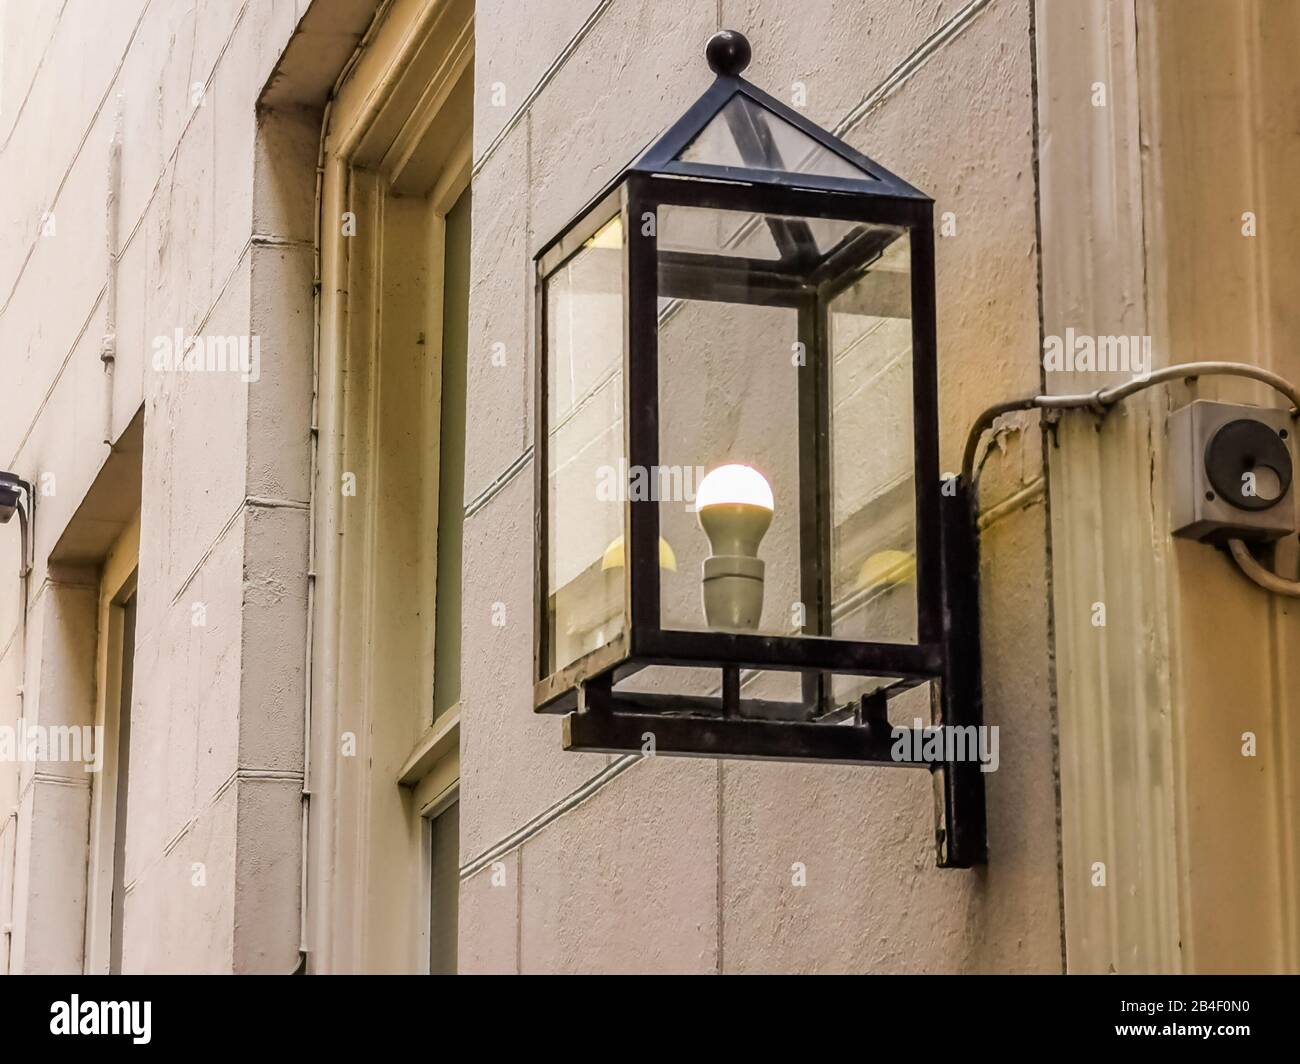 Lampadaire de design moderne, éclairage urbain et architecture, nouvelle  lanterne de rue Photo Stock - Alamy